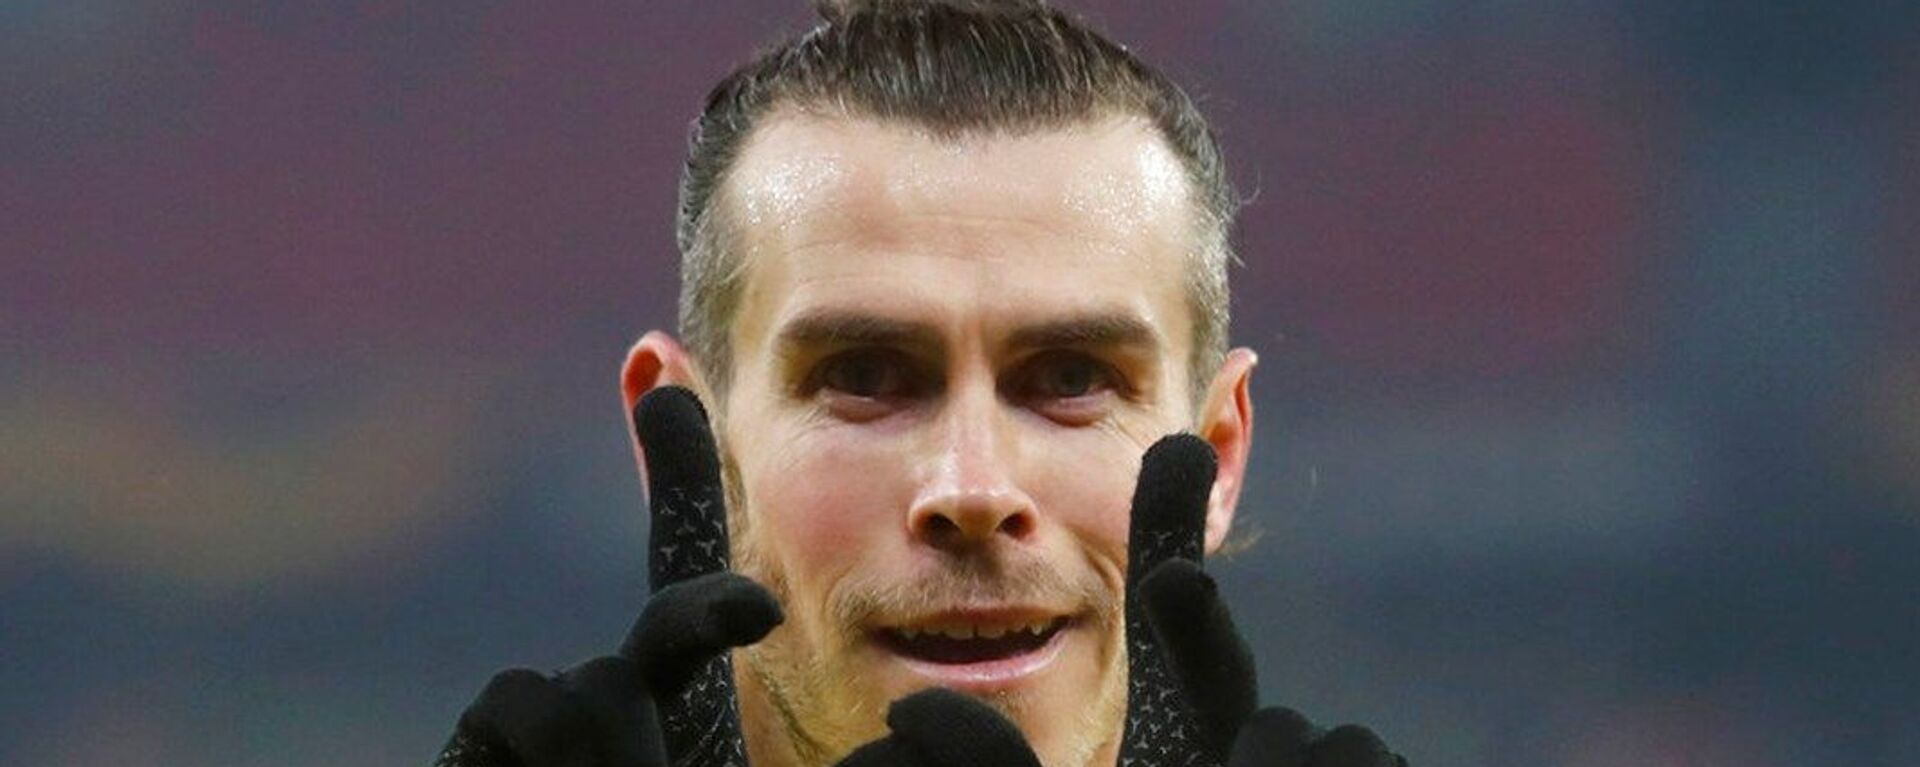 گرت بیل بازیکن تاتنهام Gareth Bale - اسپوتنیک افغانستان  , 1920, 23.05.2021